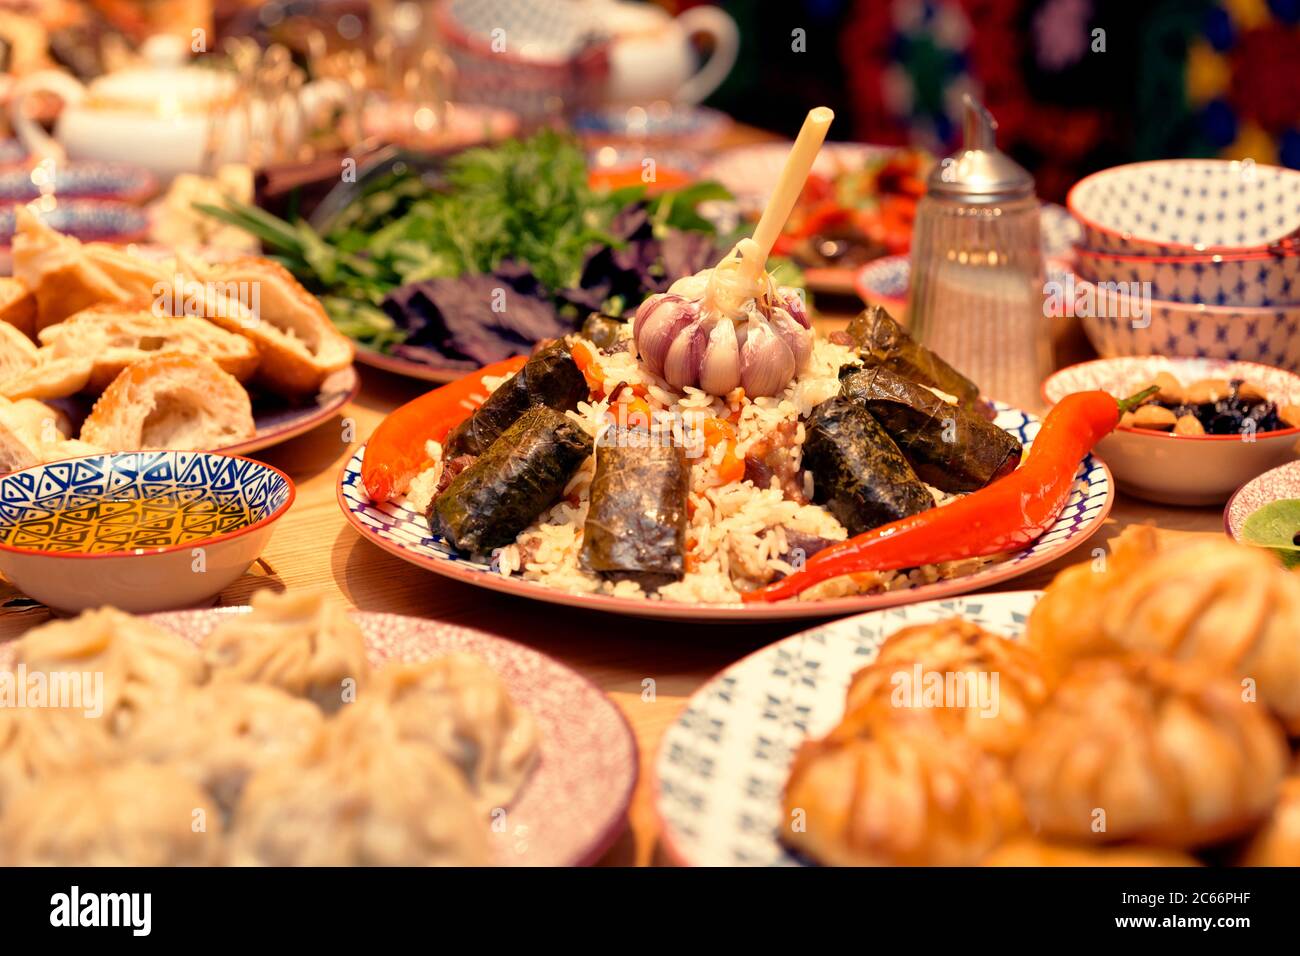 Tisch serviert mit usbekischen traditionellen Gerichten - Pilaf, Dolma, Knödel, getönten Stockfoto